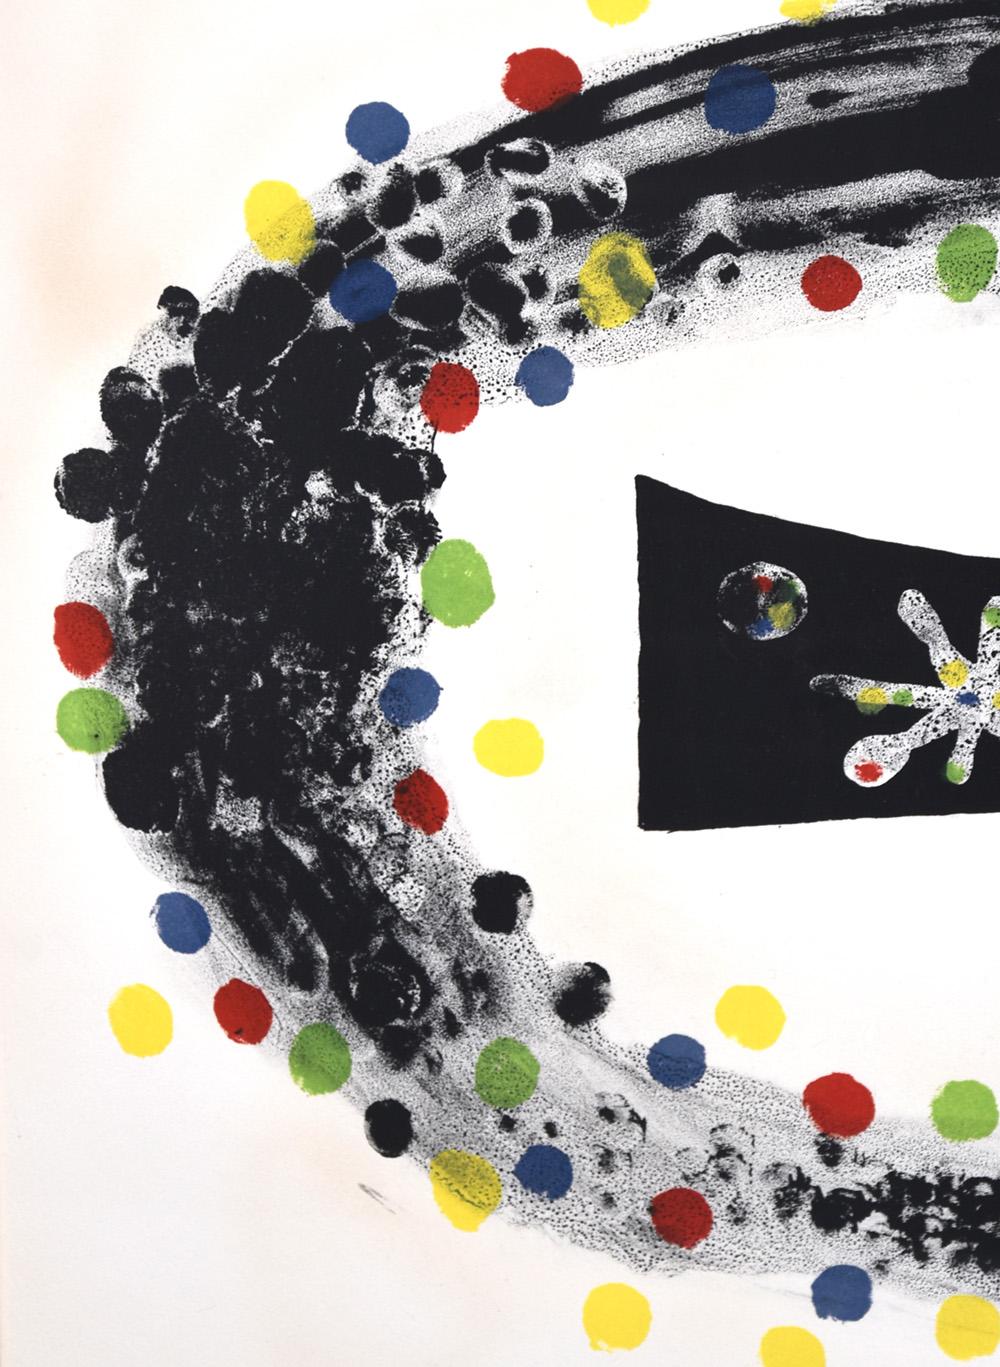 Nebula est une pièce intellectuelle passionnante qui mêle les sensibilités artistiques et scientifiques de Miró. Composés de cercles rouges, bleus, jaunes et verts flottant le long d'un anneau noir, ces éléments gravitent autour d'une figure